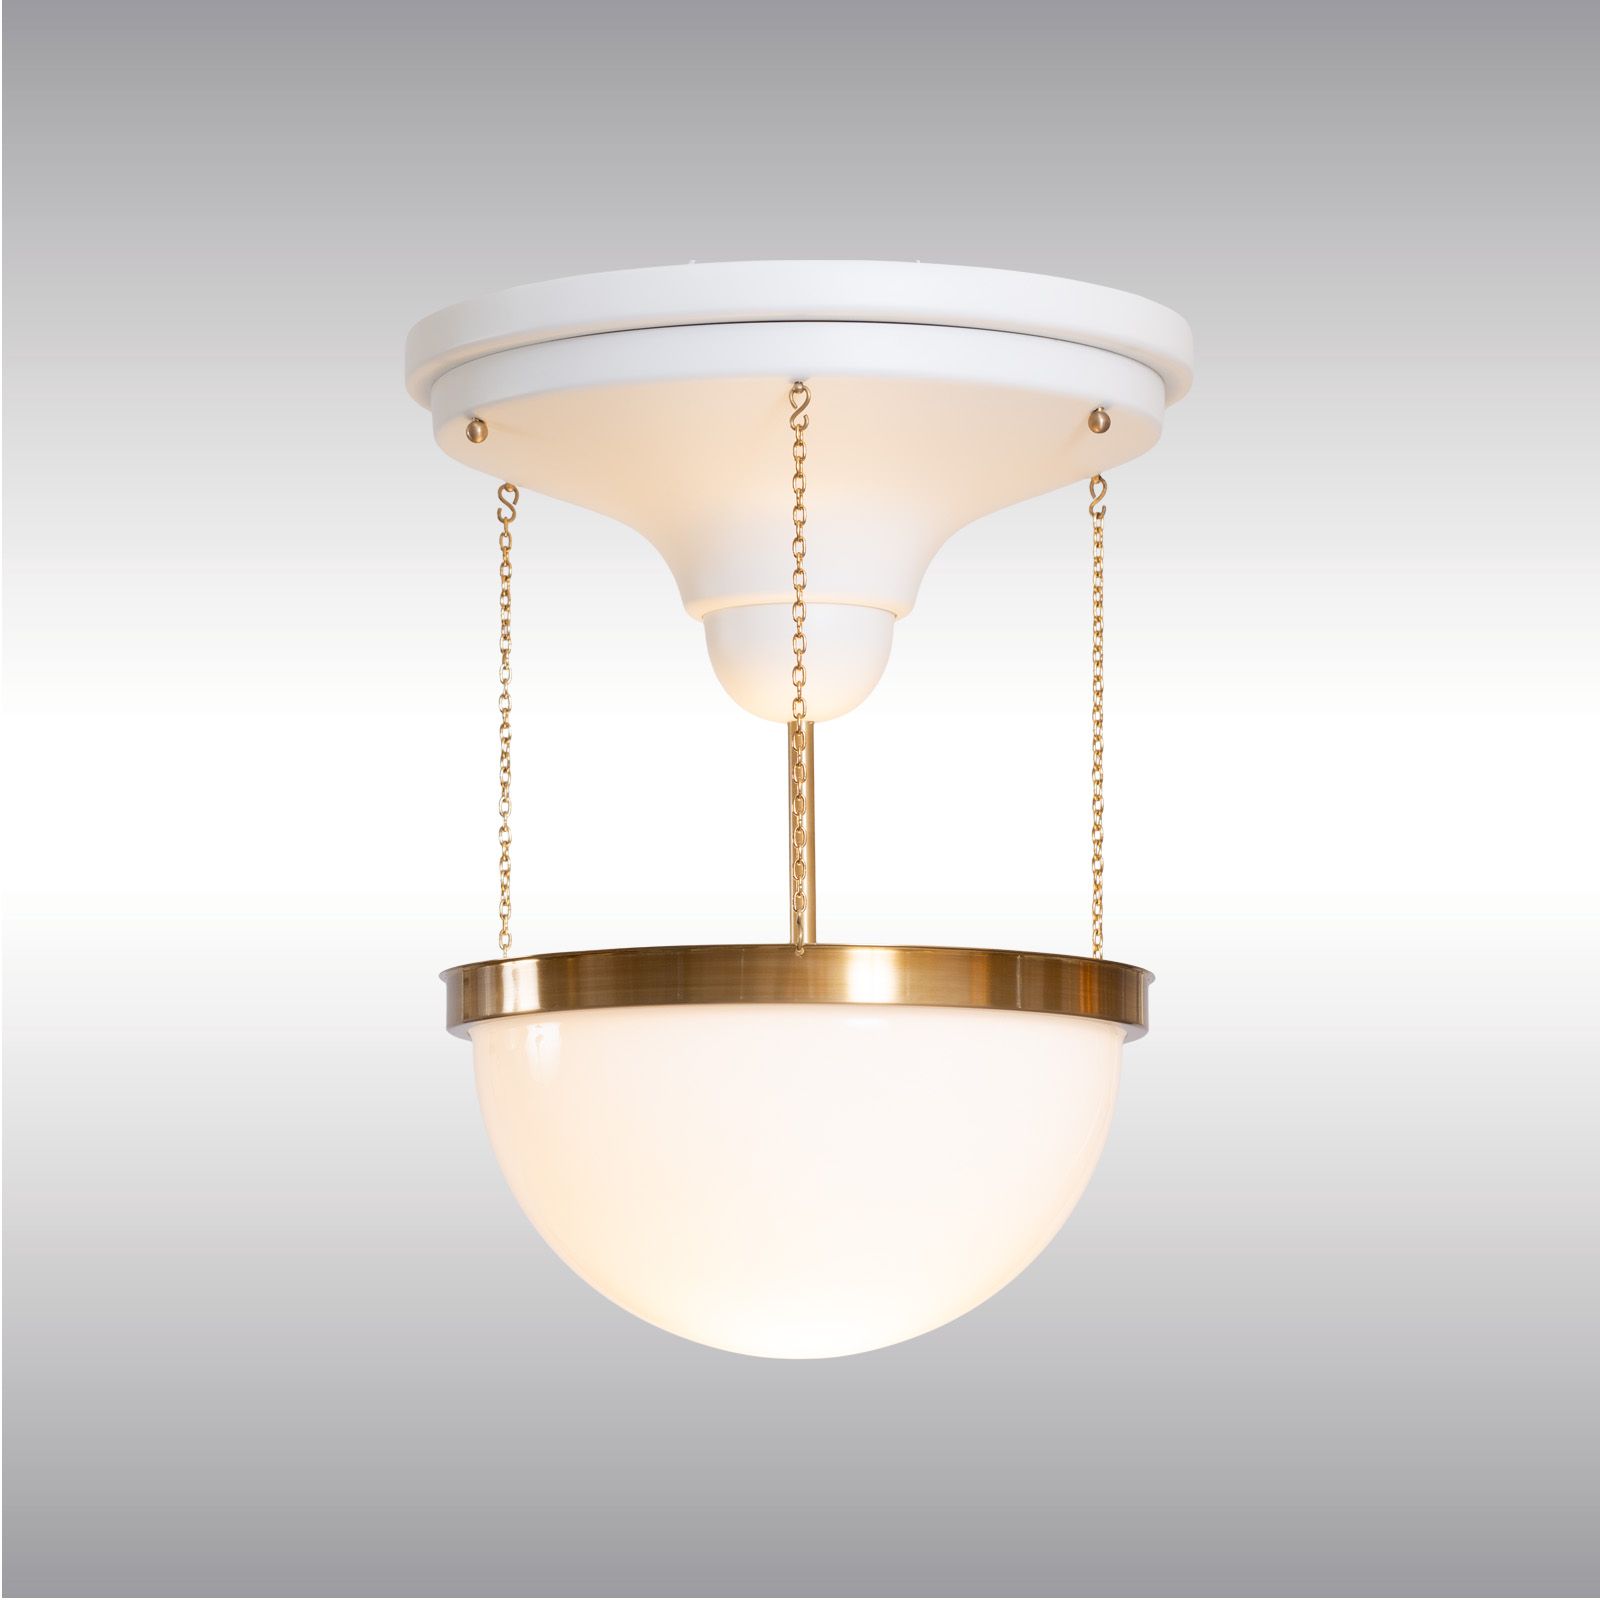 WOKA LAMPS VIENNA - OrderNr.: 21803|Mandl-Rosenfeld - Adolf Loos - Design: Adolf Loos